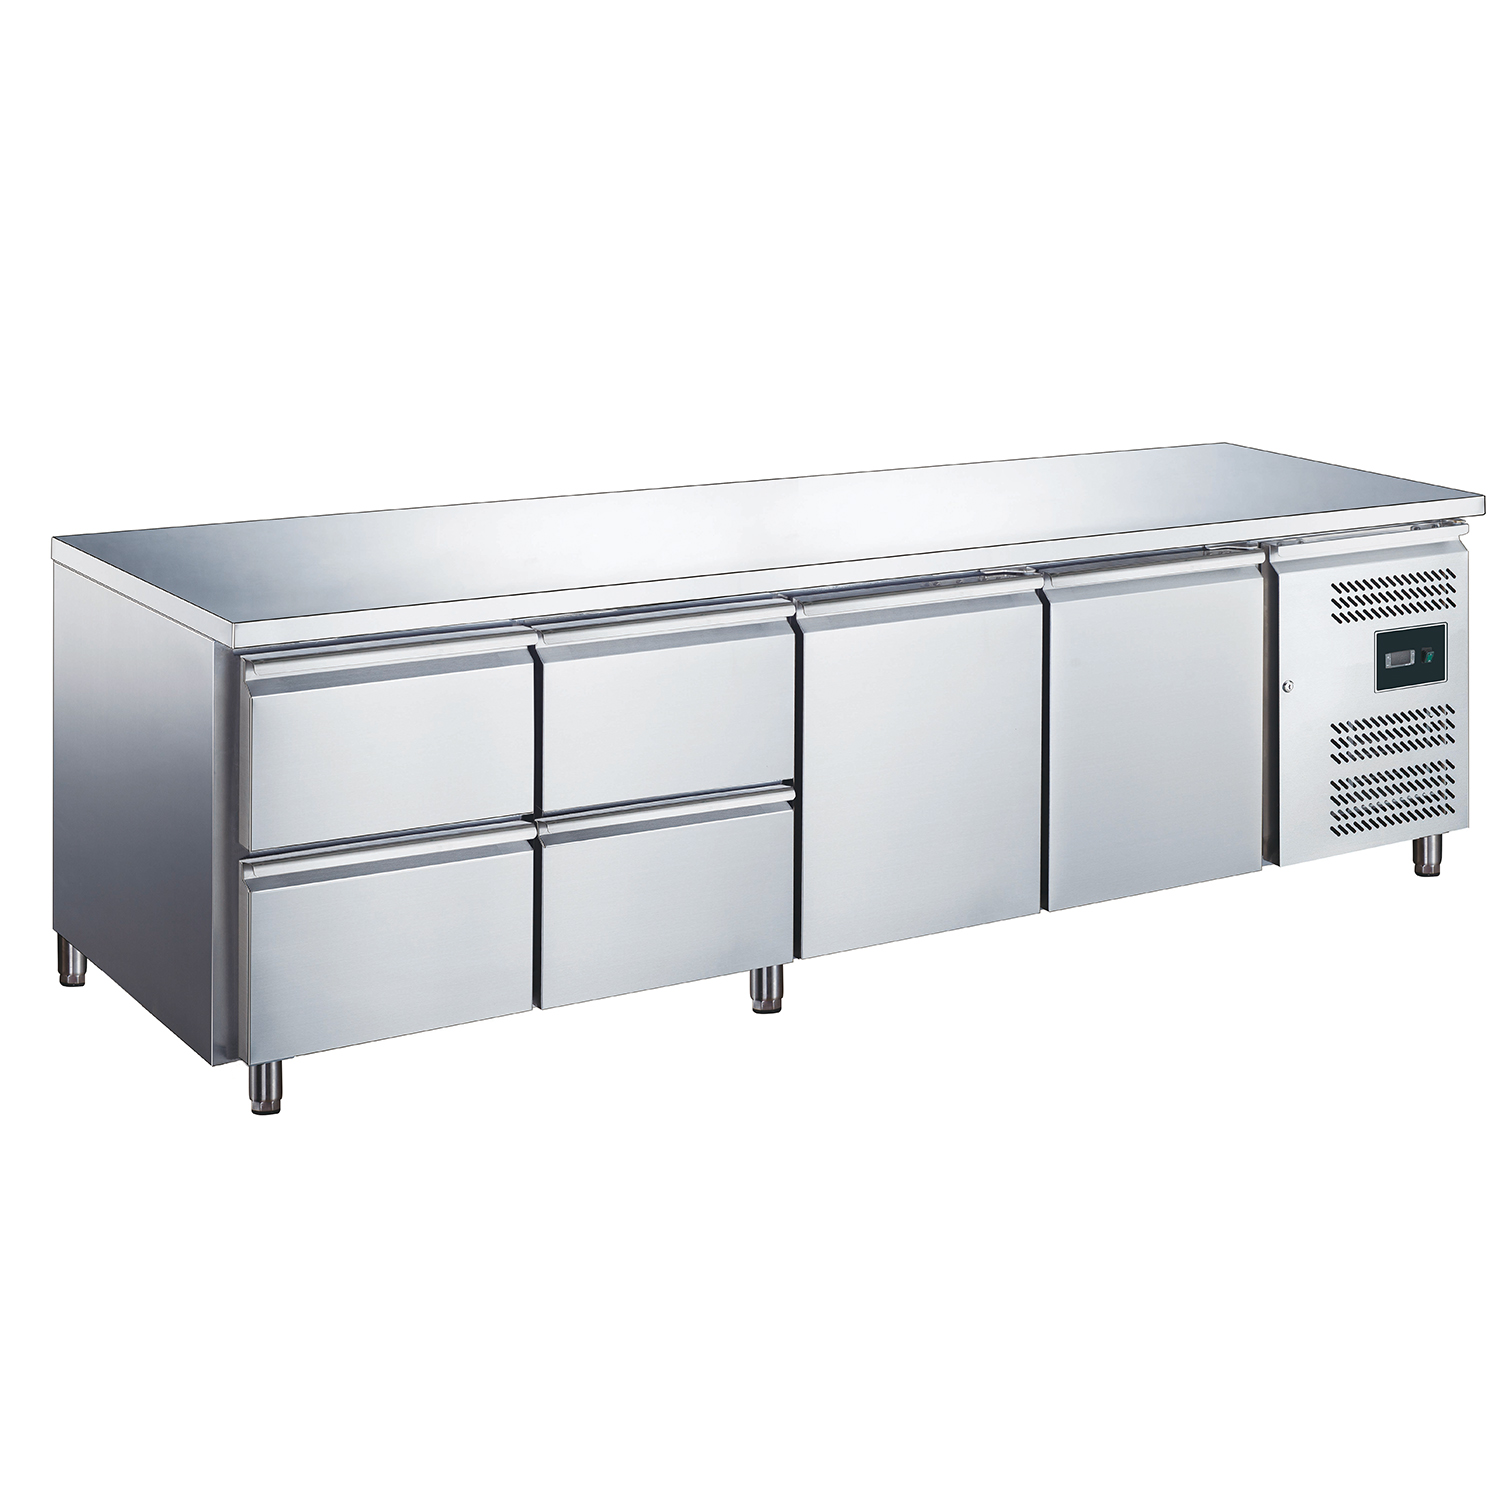 Table réfrigérée avec 2 portes et 2x ensemble de 2 tiroirs, modèle EGN 4140 TN